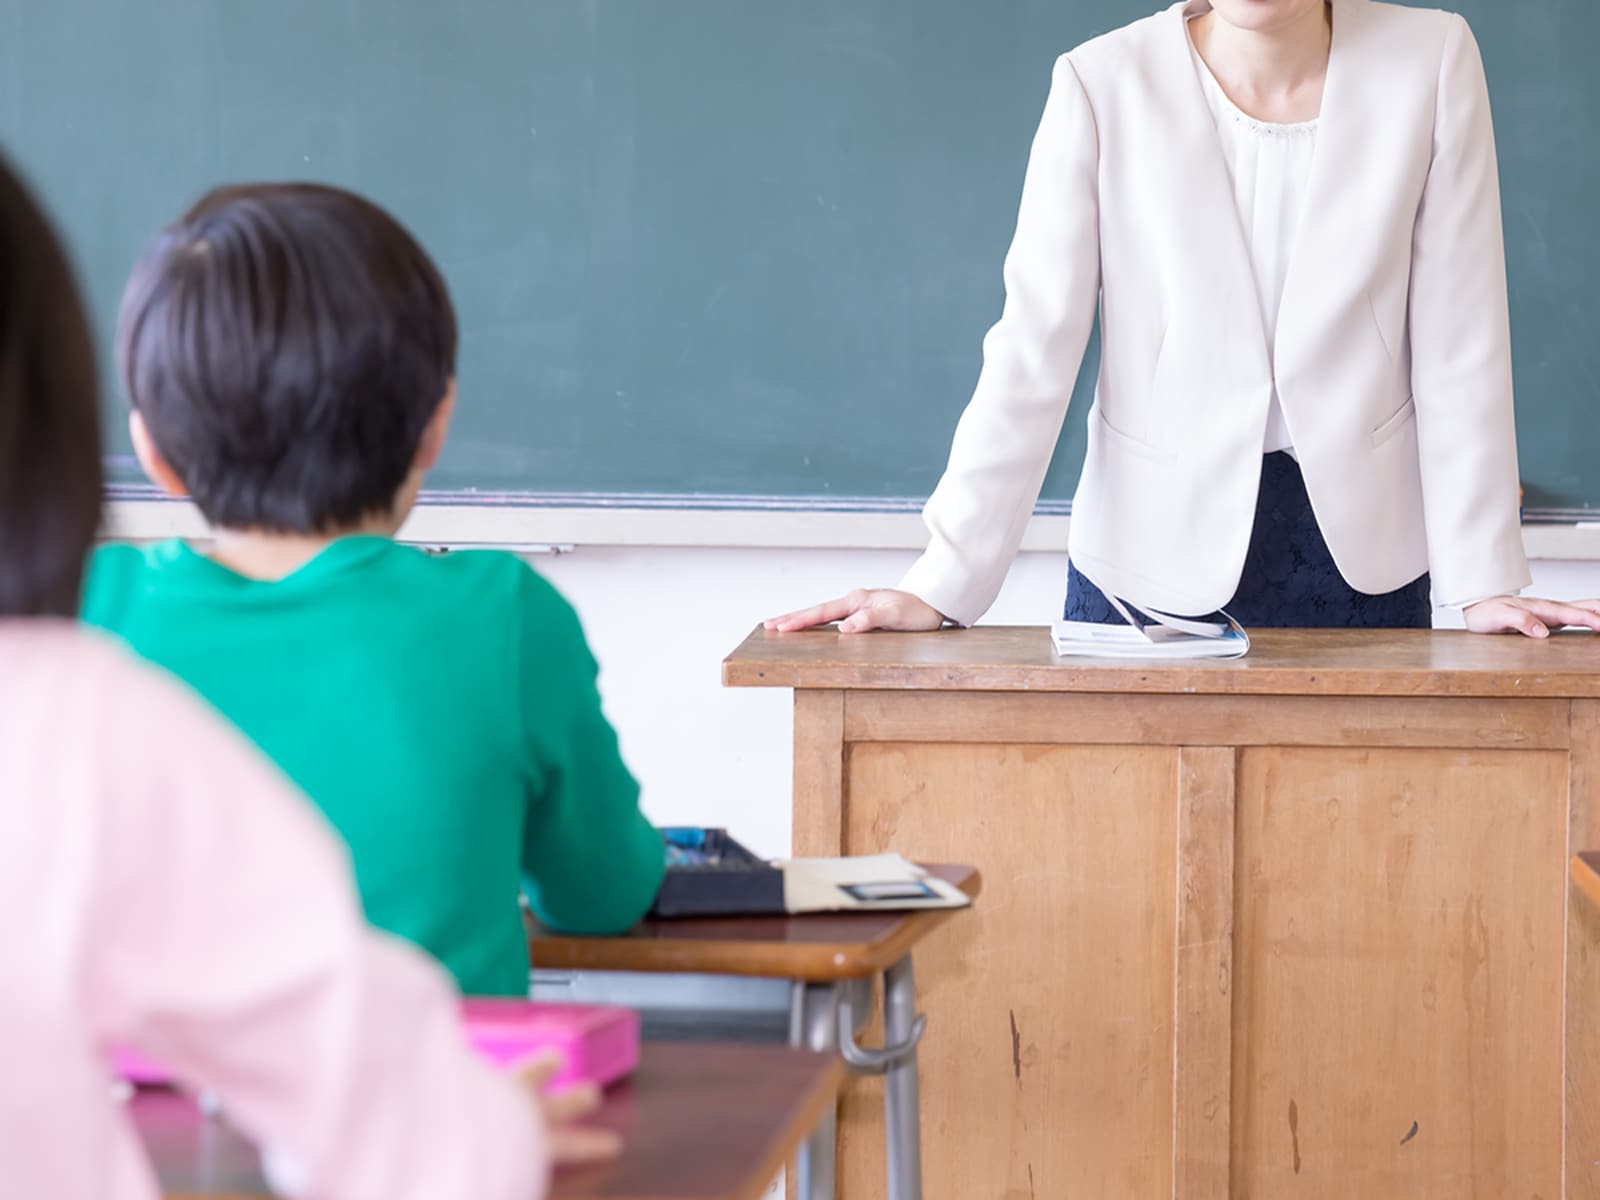 後れが指摘される、日本の性教育。元小学校教師が考える「問題点」と、学校で教える「意味」